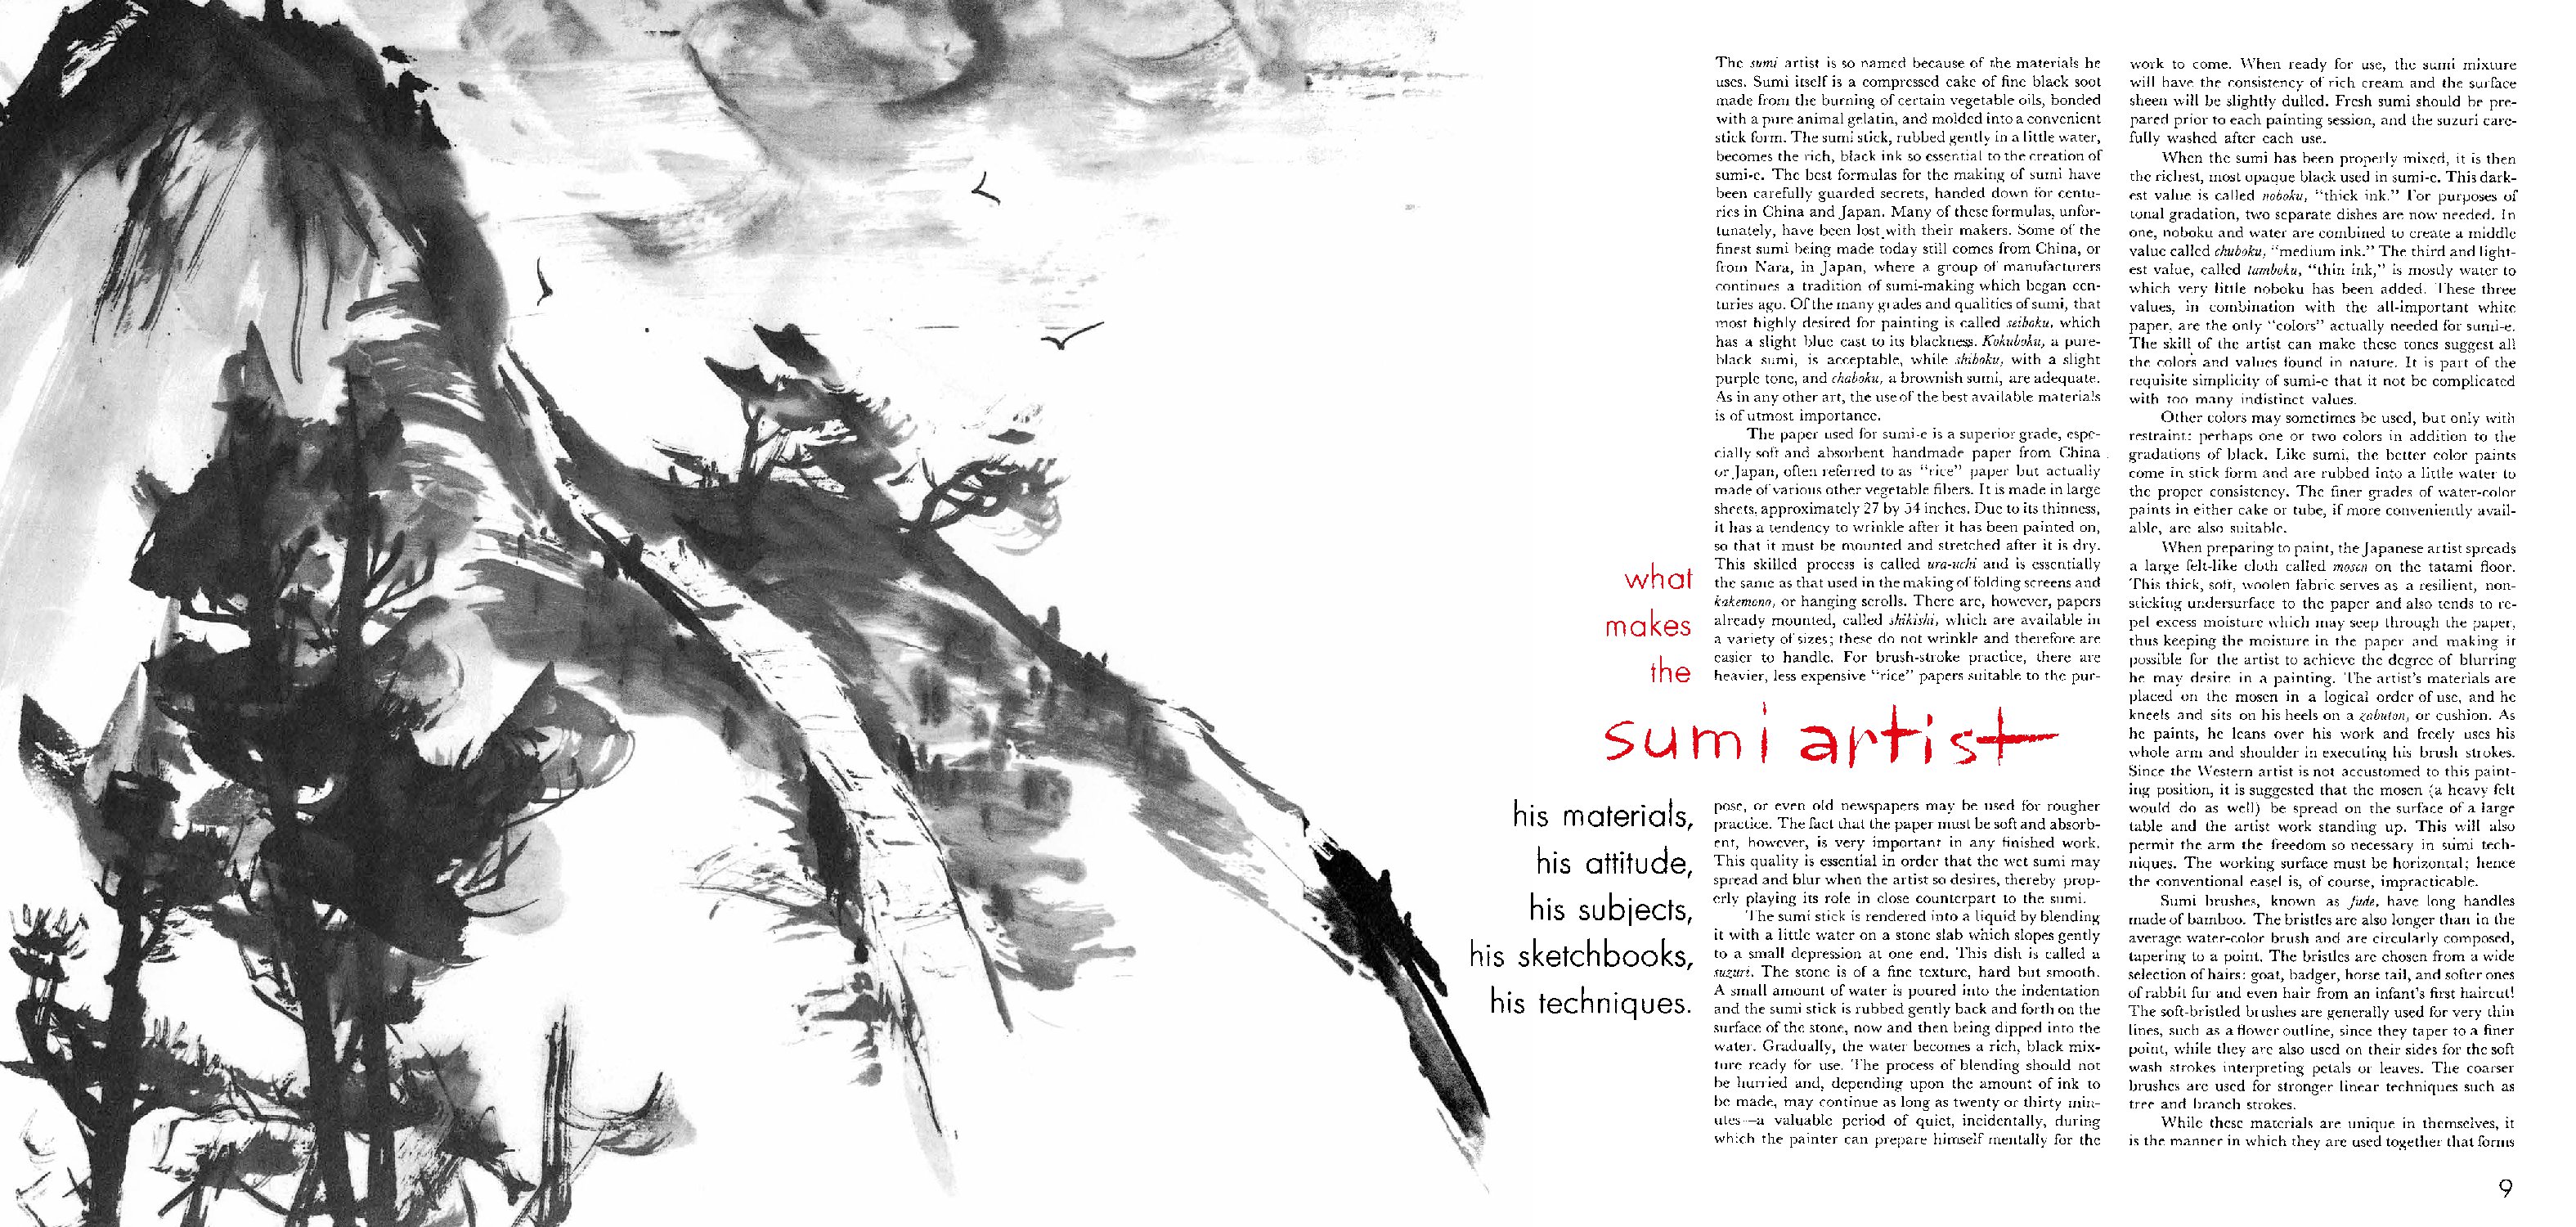 The Art and Technique of Sumi-e